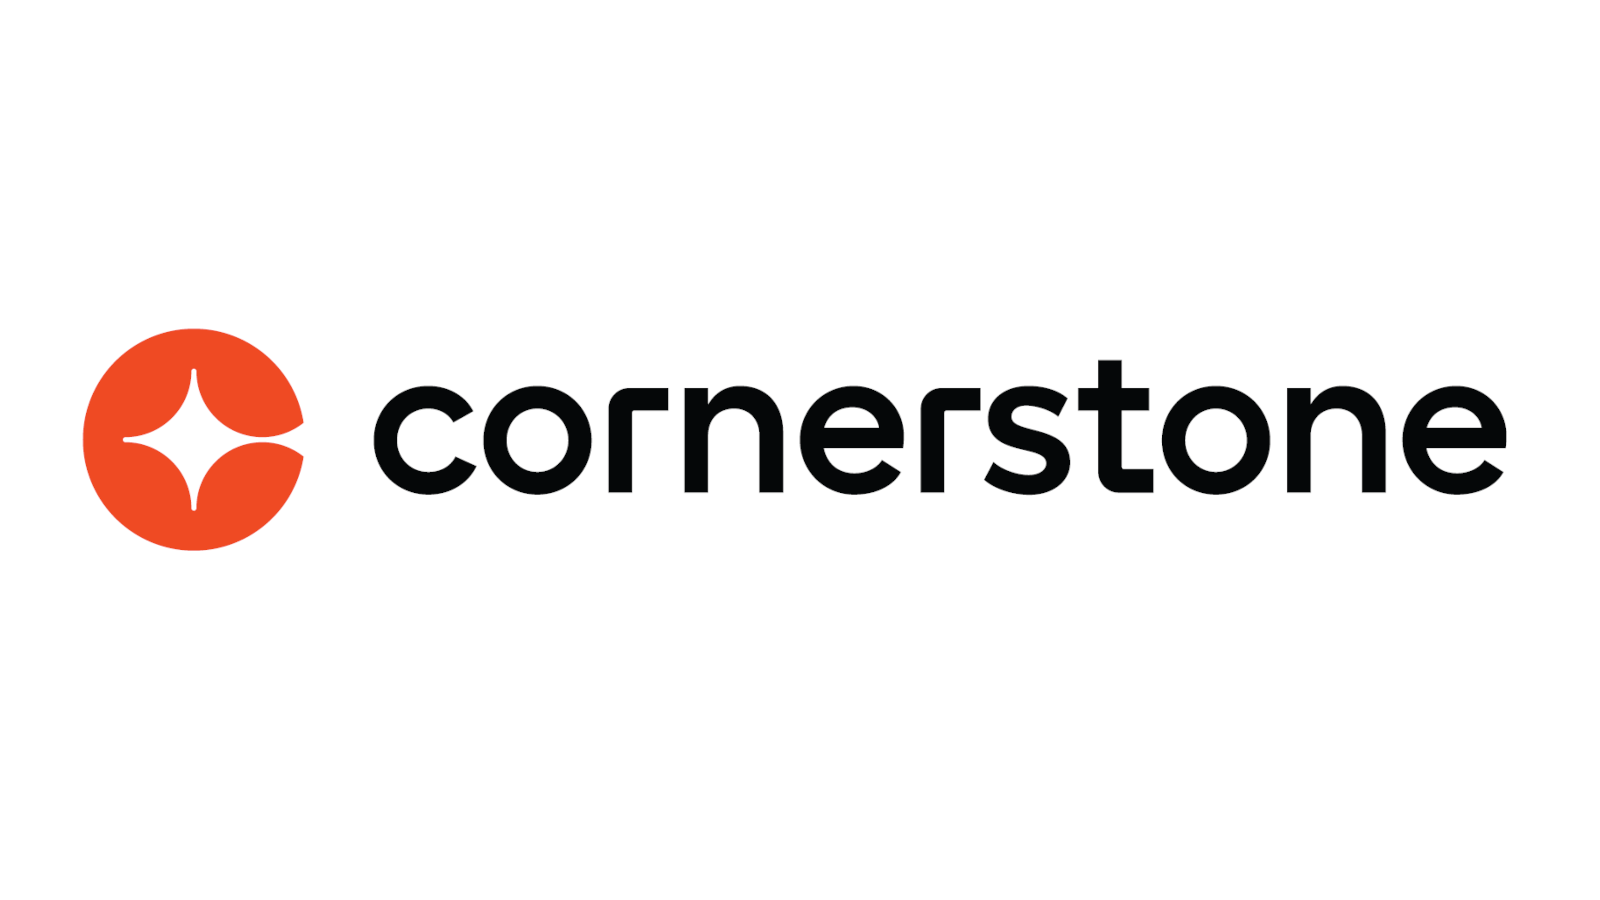 Cornerstone lance Cornerstone Xplor pour des stratégies RH/Business centrées sur l’humain